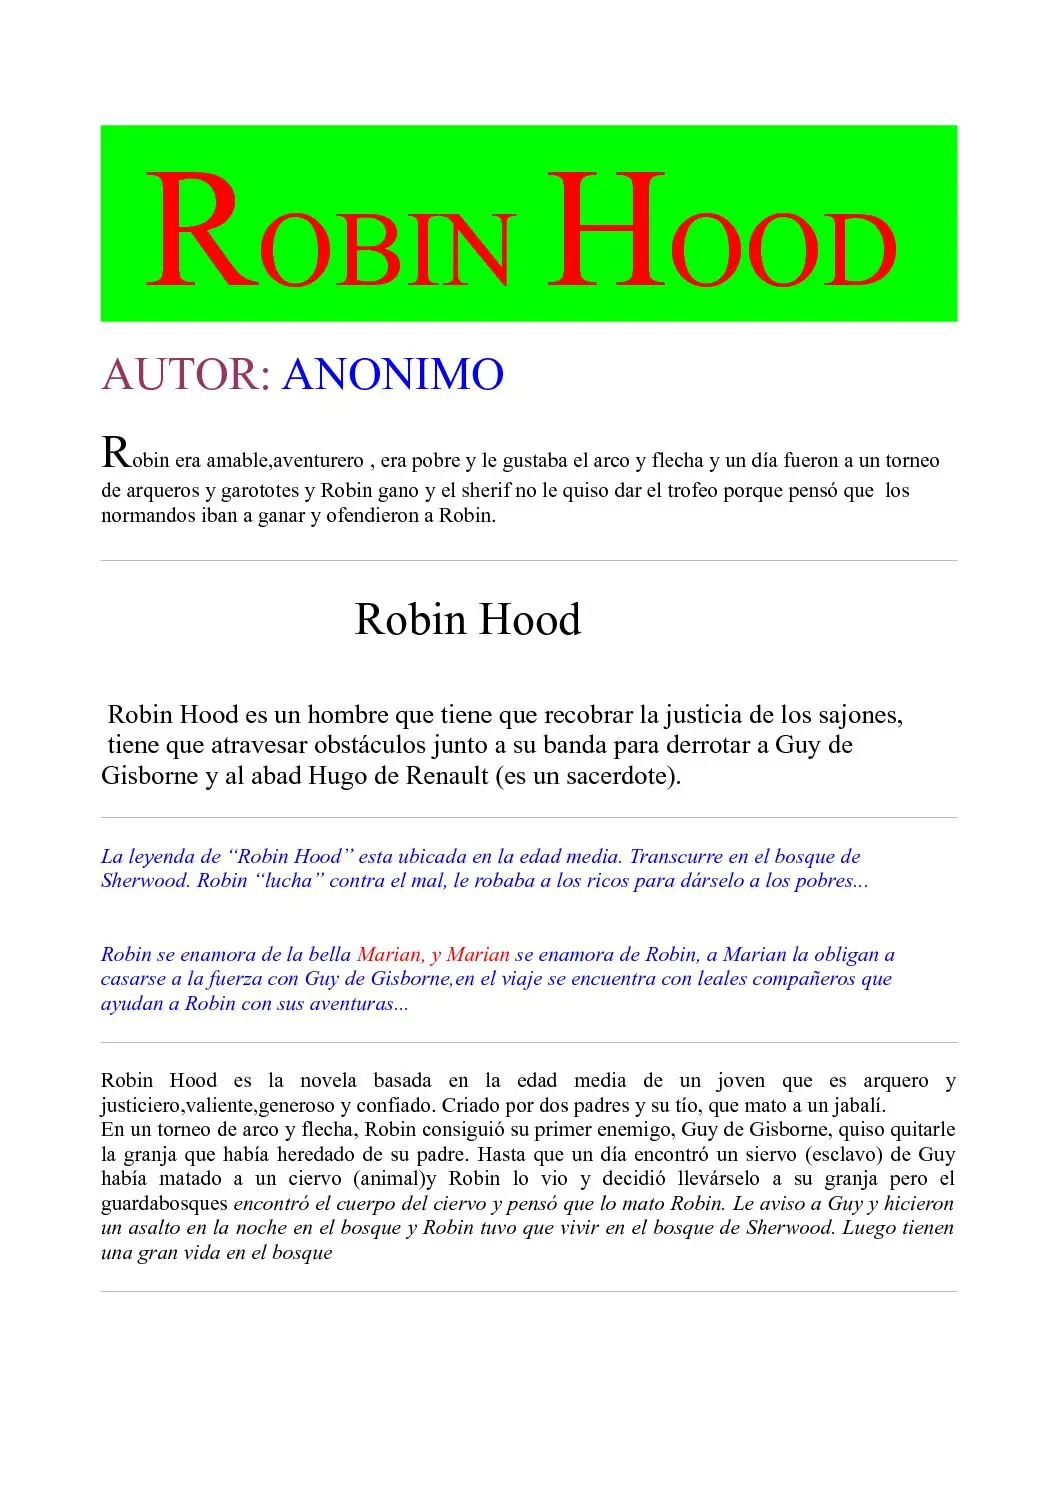 resumen de la historia de robin hood - Cuáles eran las características más importantes del Robin Hood de la leyenda